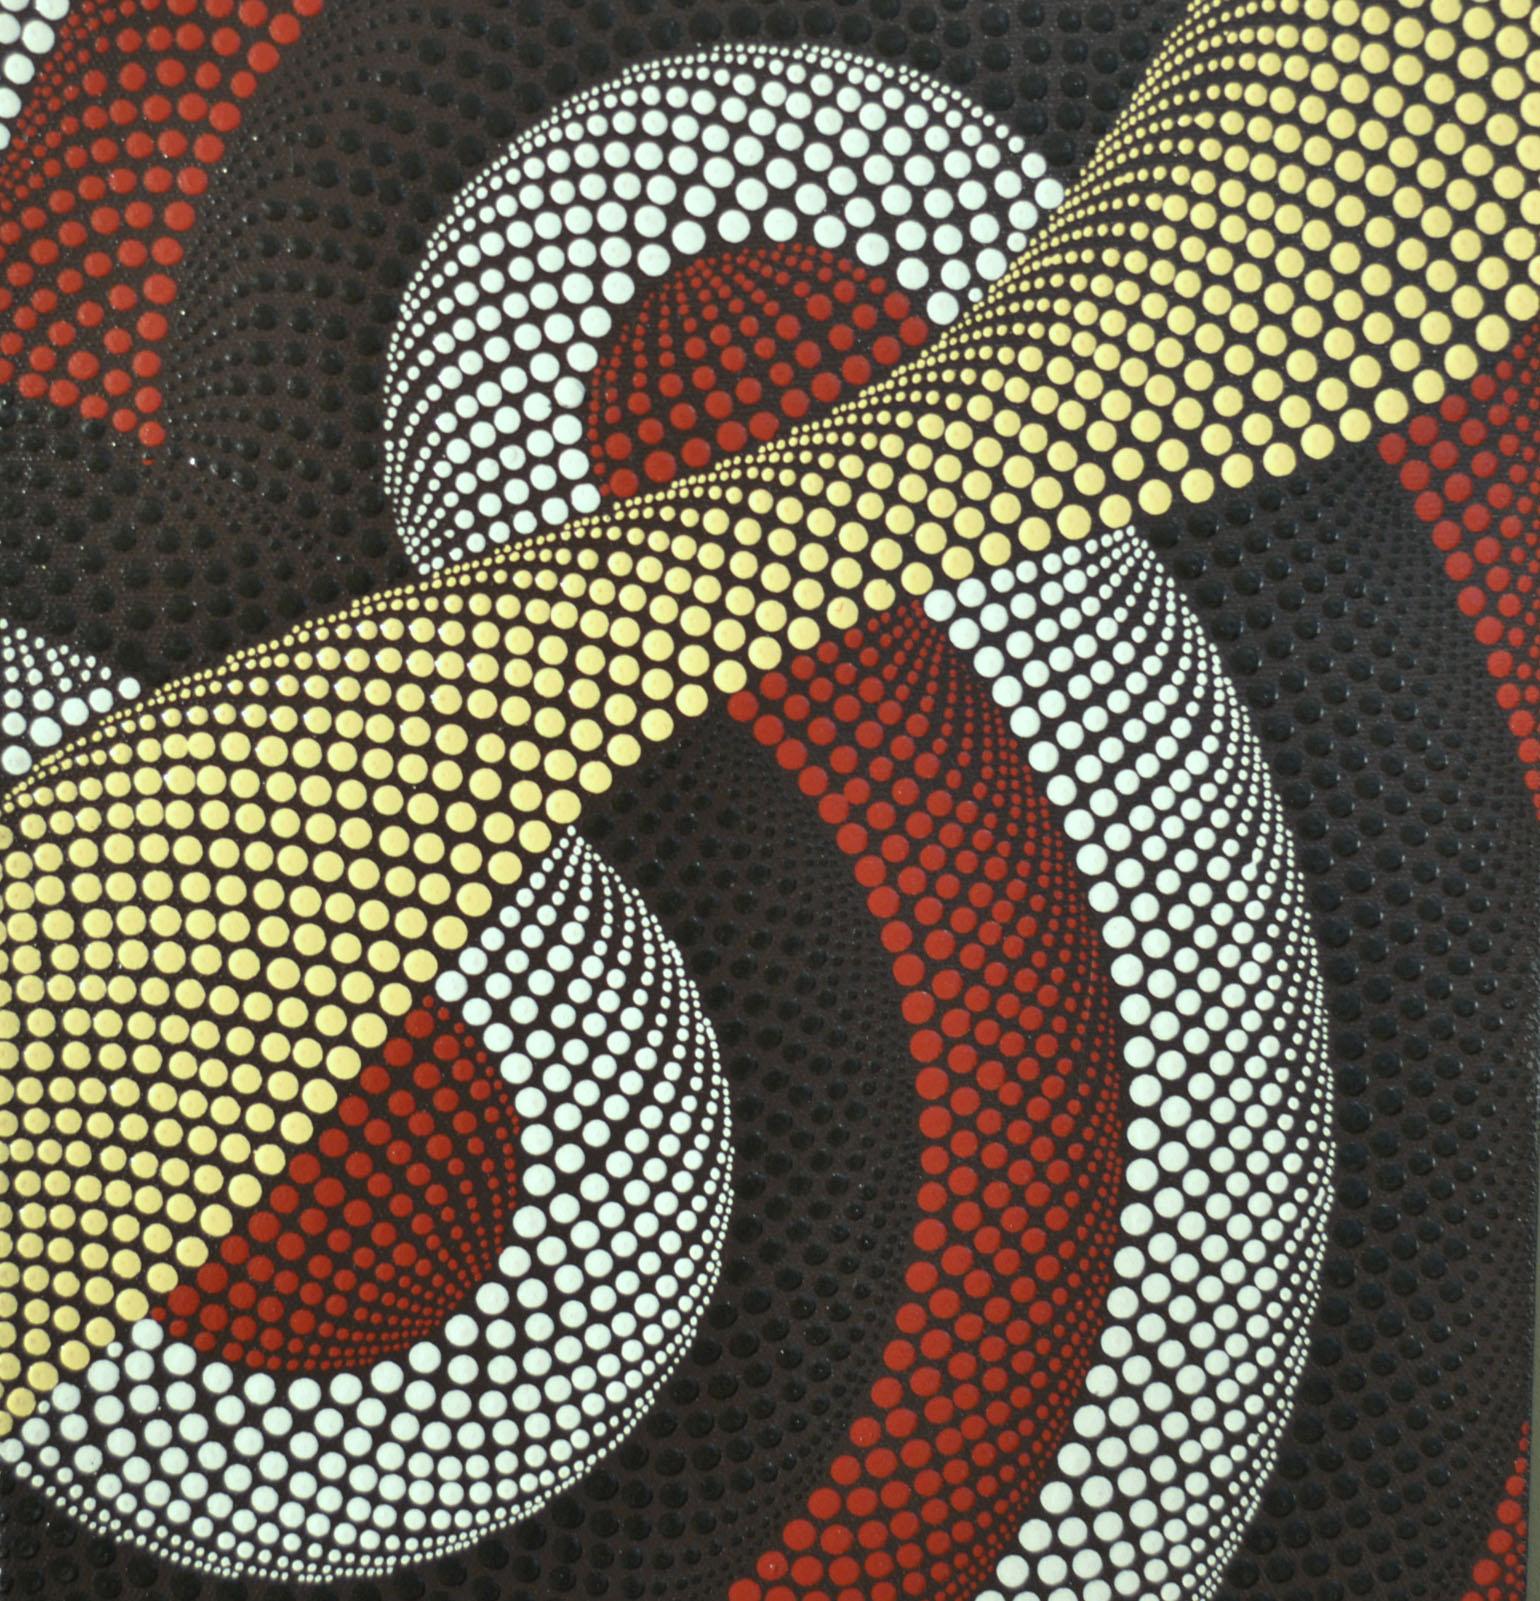 contemporary aboriginal art for sale